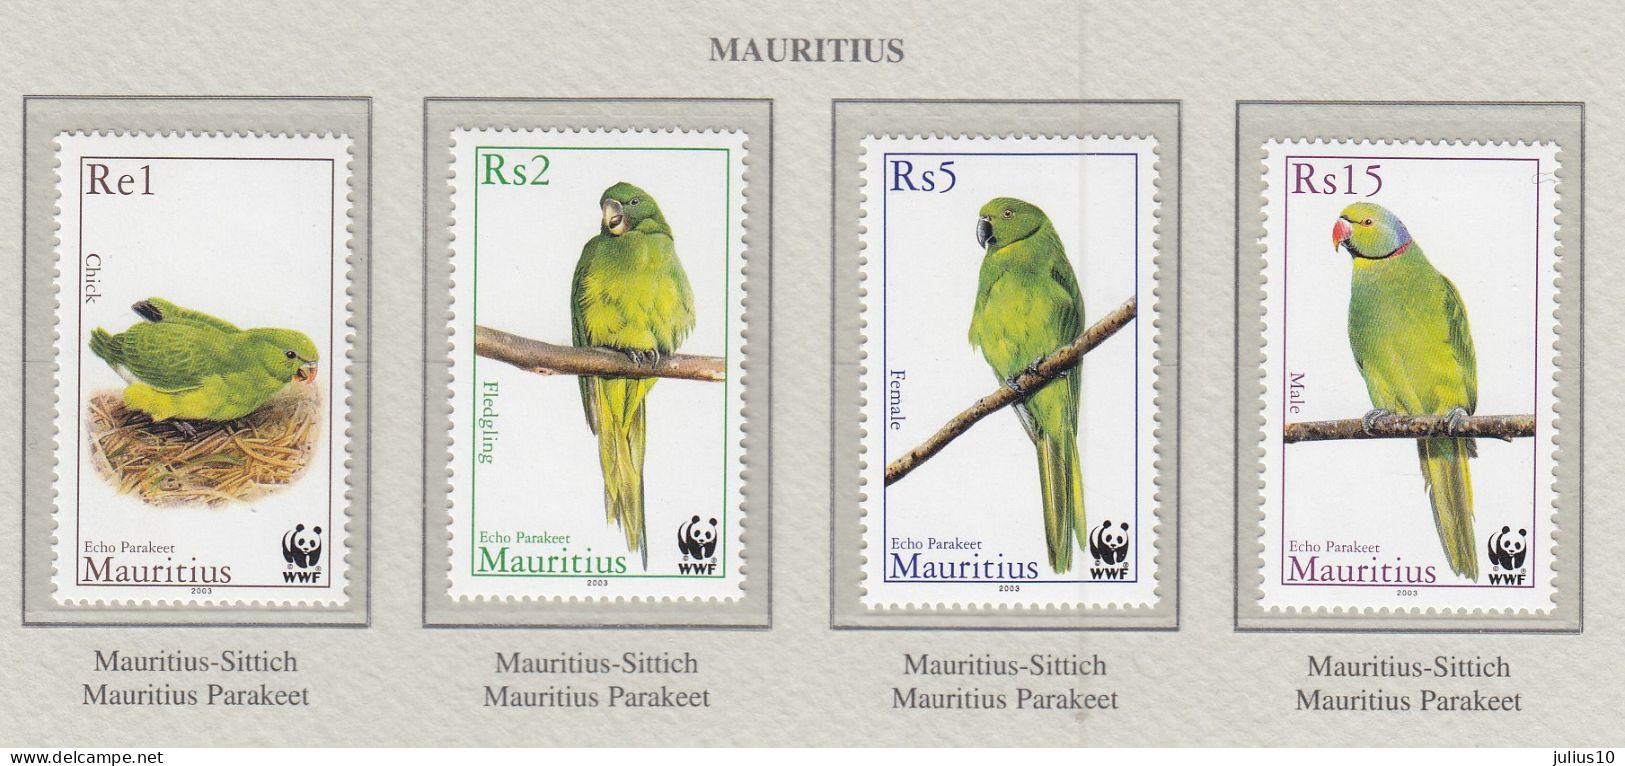 MAURITIUS 2003 WWF Birds Parrots Mi 963-966 MNH(**) Fauna 671 - Papagayos